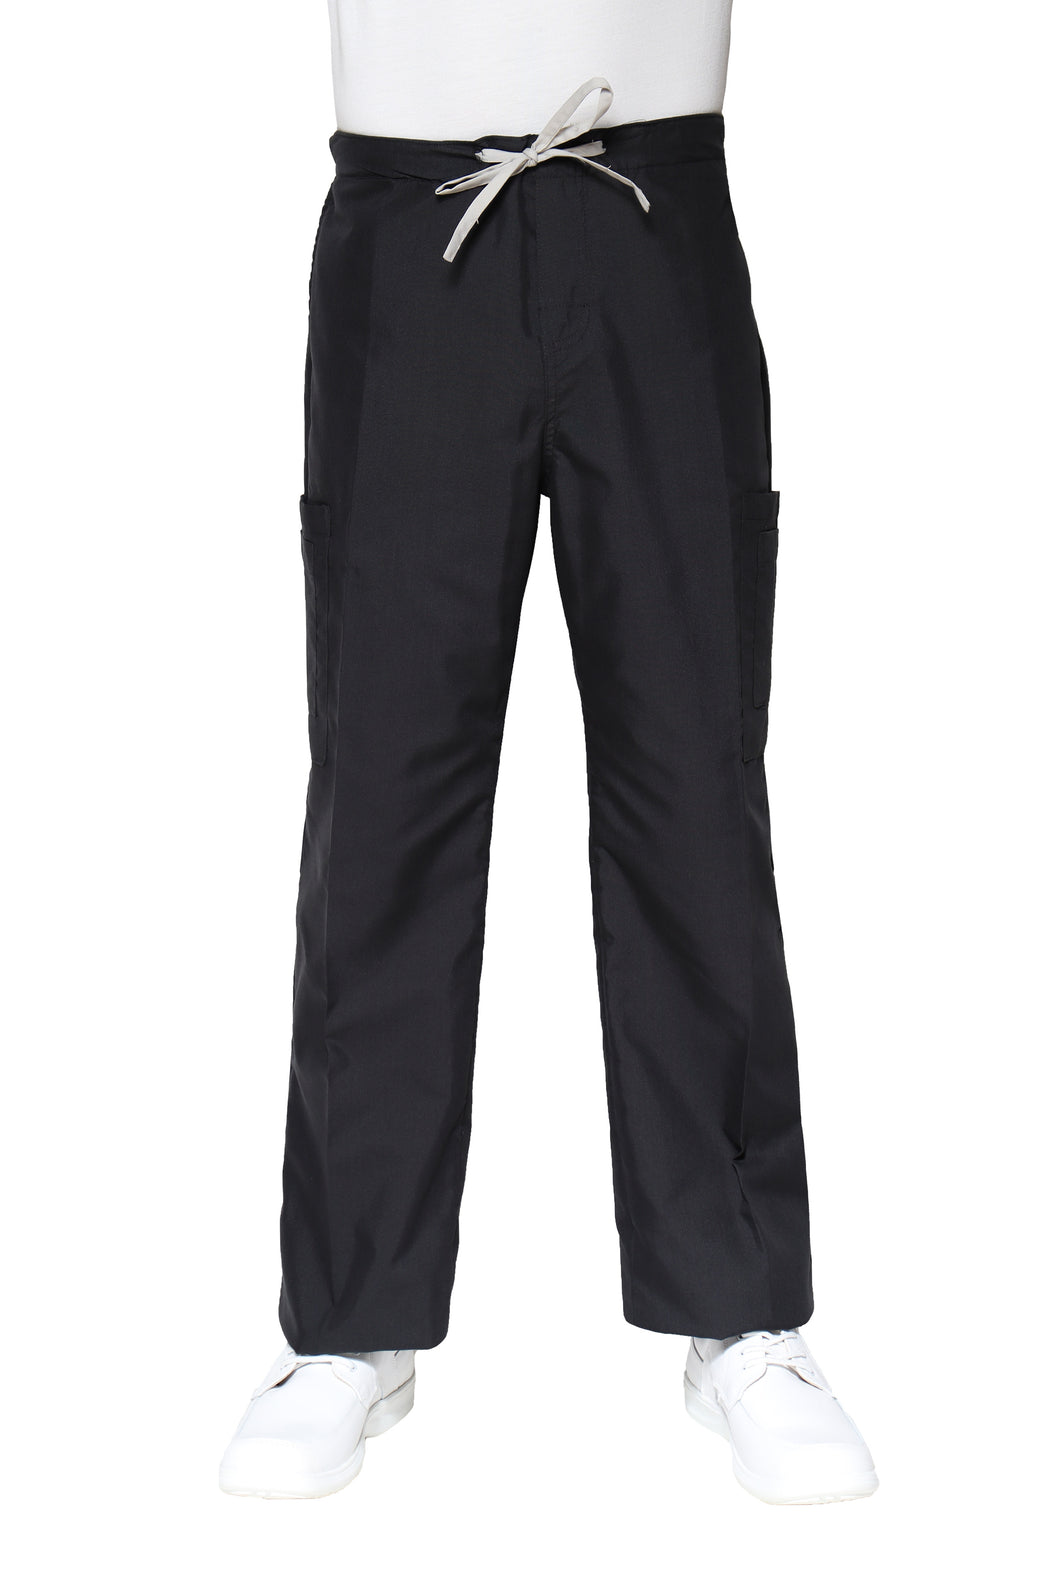 Pantalón Pant HA-25P-TELA SPORT-Color NEGRO/PLATA-HOMBRE-HASSAN Uniformes